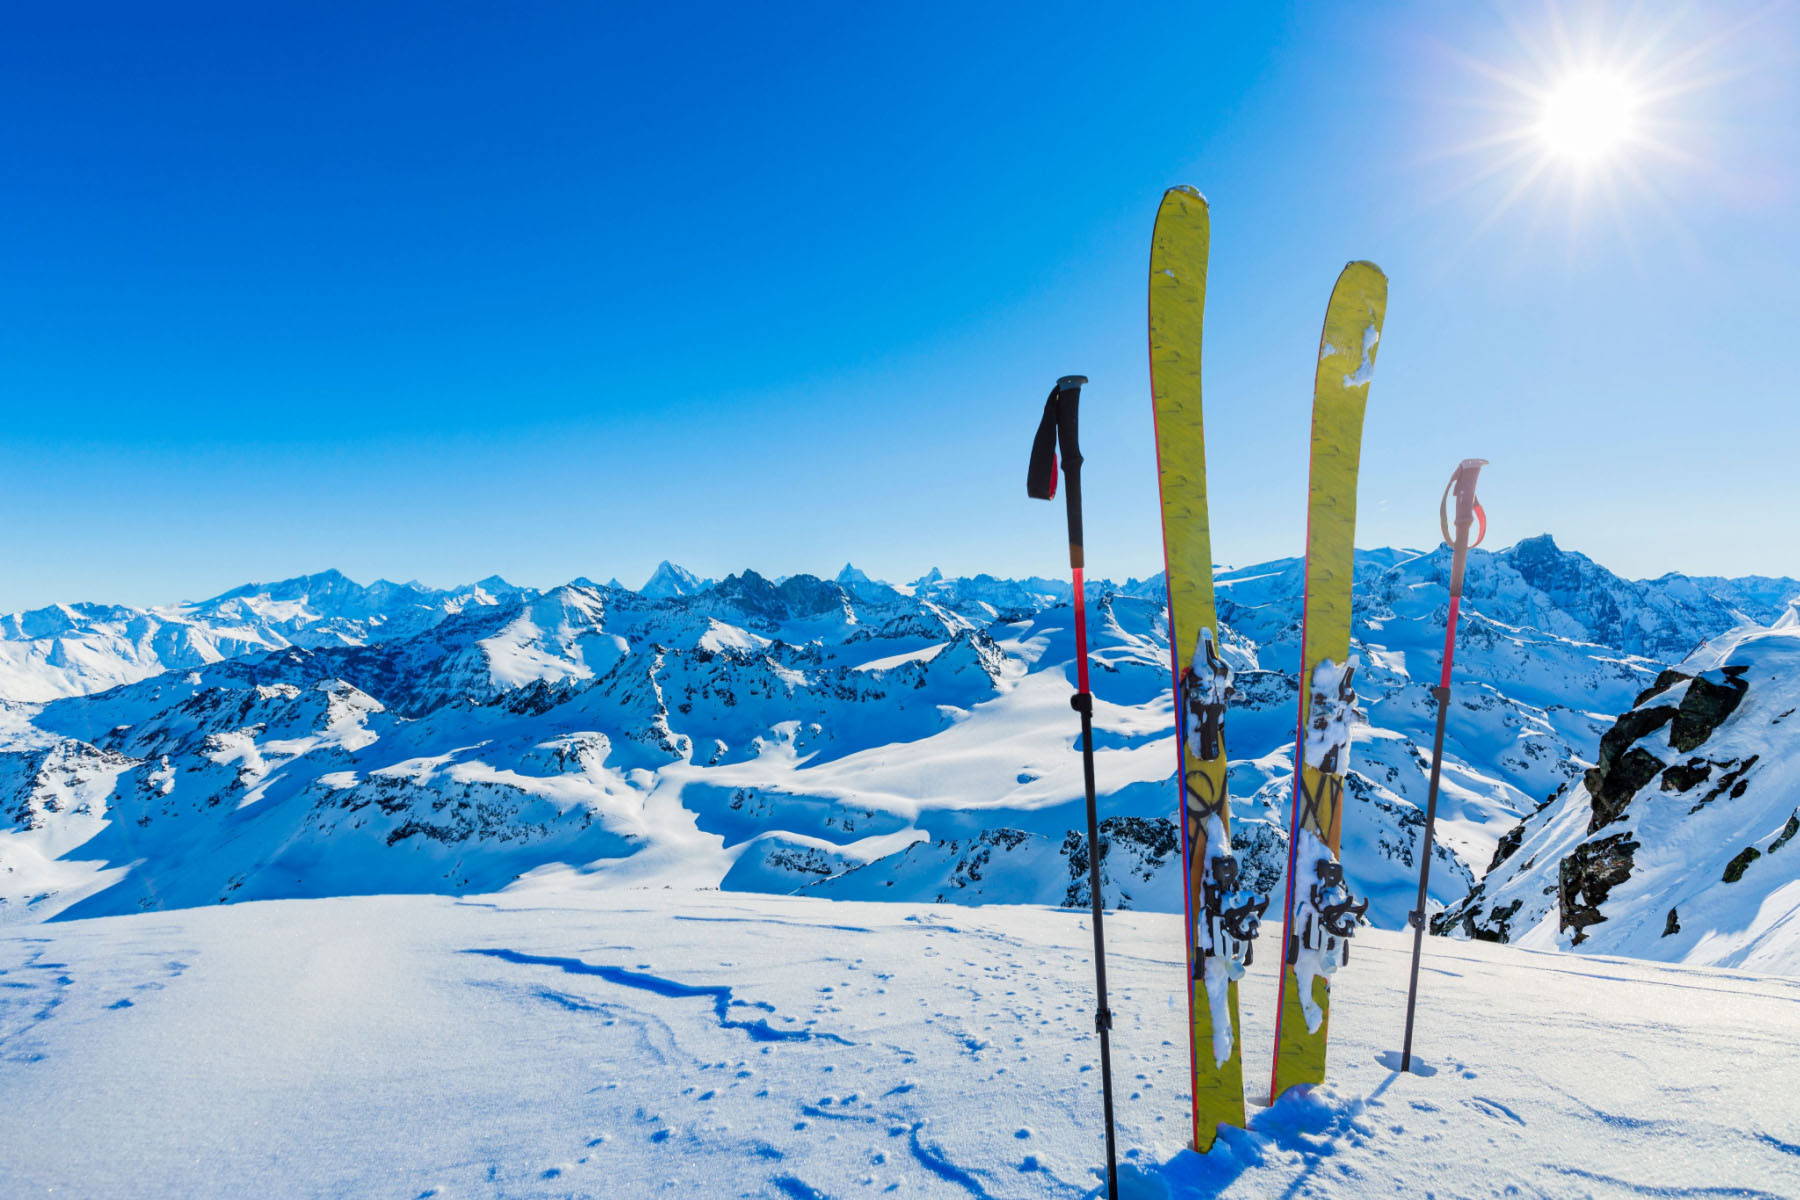 Skitourenausrüstung im Schnee mit Berggipfeln im Hintergrund